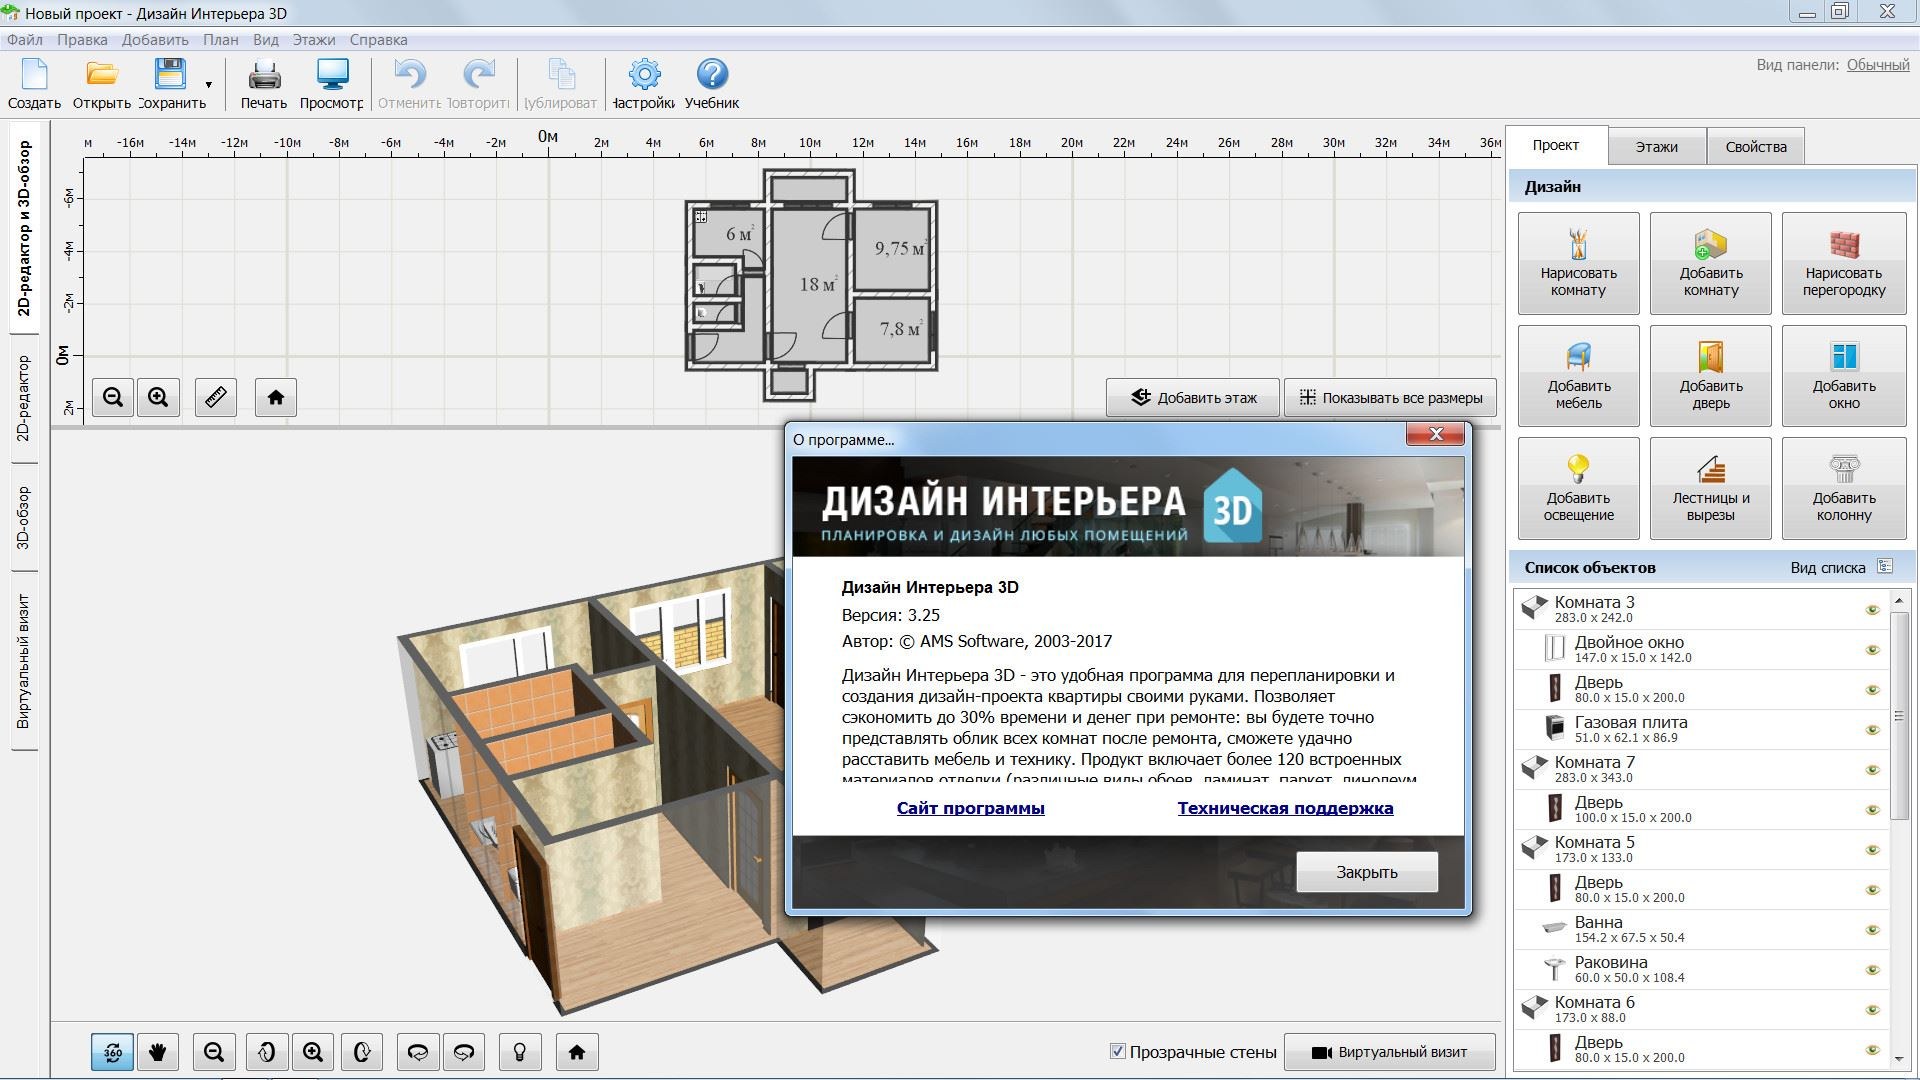 3 program design. Программы для 3д моделирования квартиры. Дизайн интерьера 3d примеры проектов. 3d проектирование интерьера. Программа для проектирования интерьера.